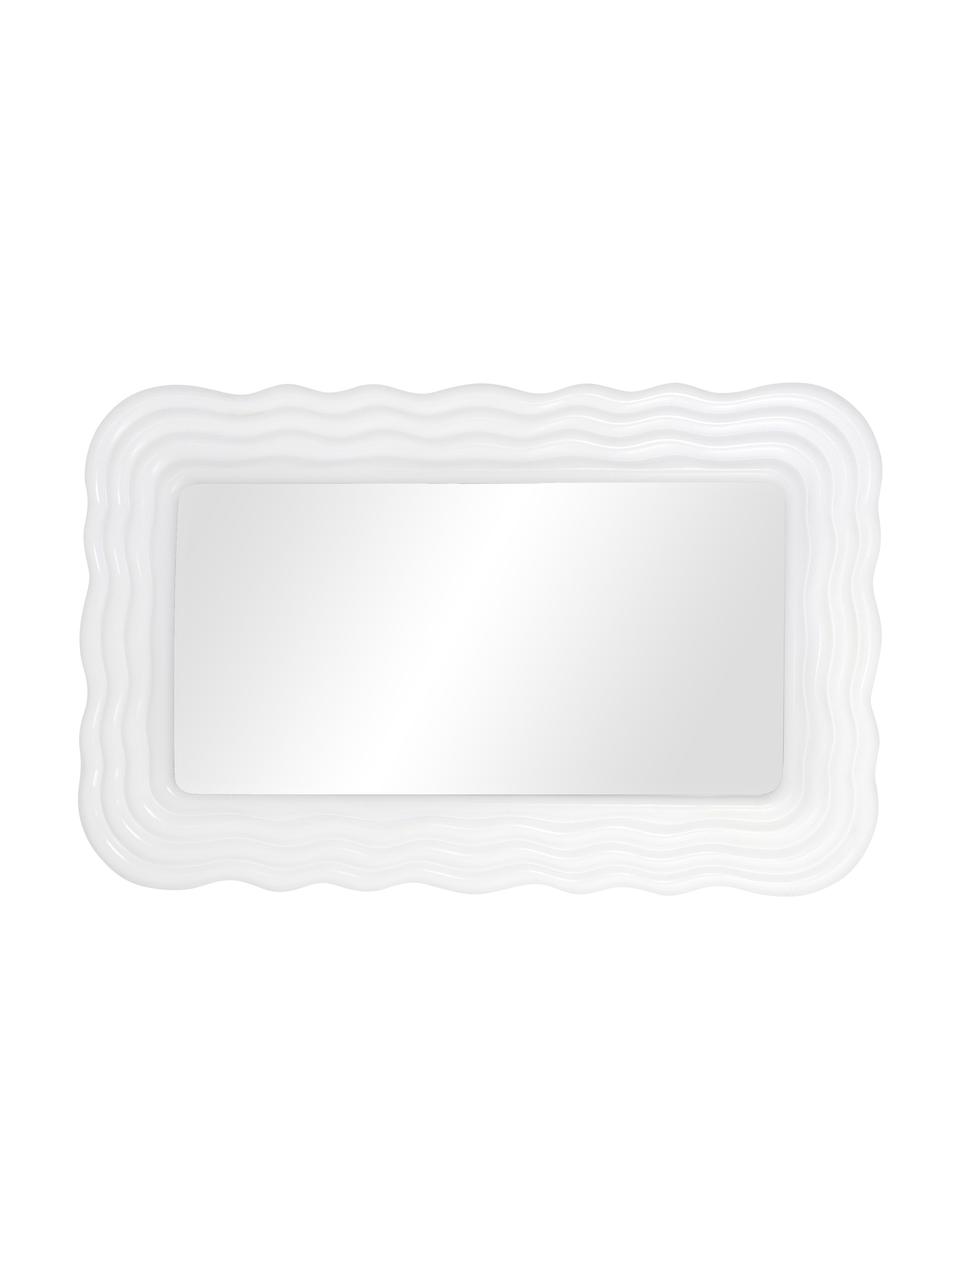 Lustro ścienne z ramą z tworzywa sztucznego Huntington, Biały, S 50 x W 80 cm